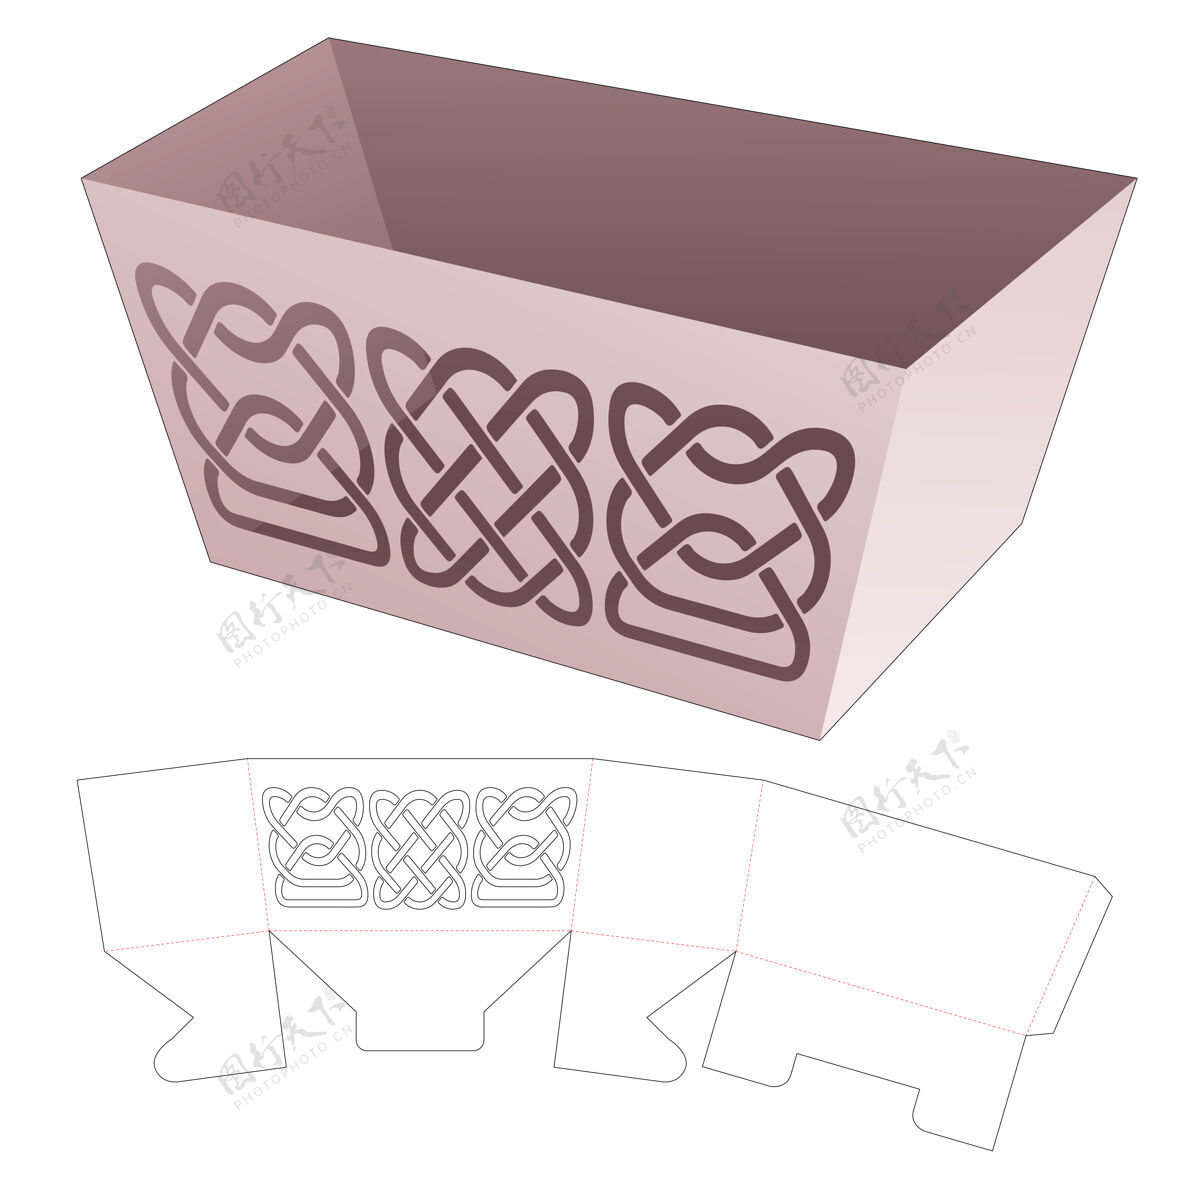 线碗盒与曲线模具模切模板空白蓝图盒